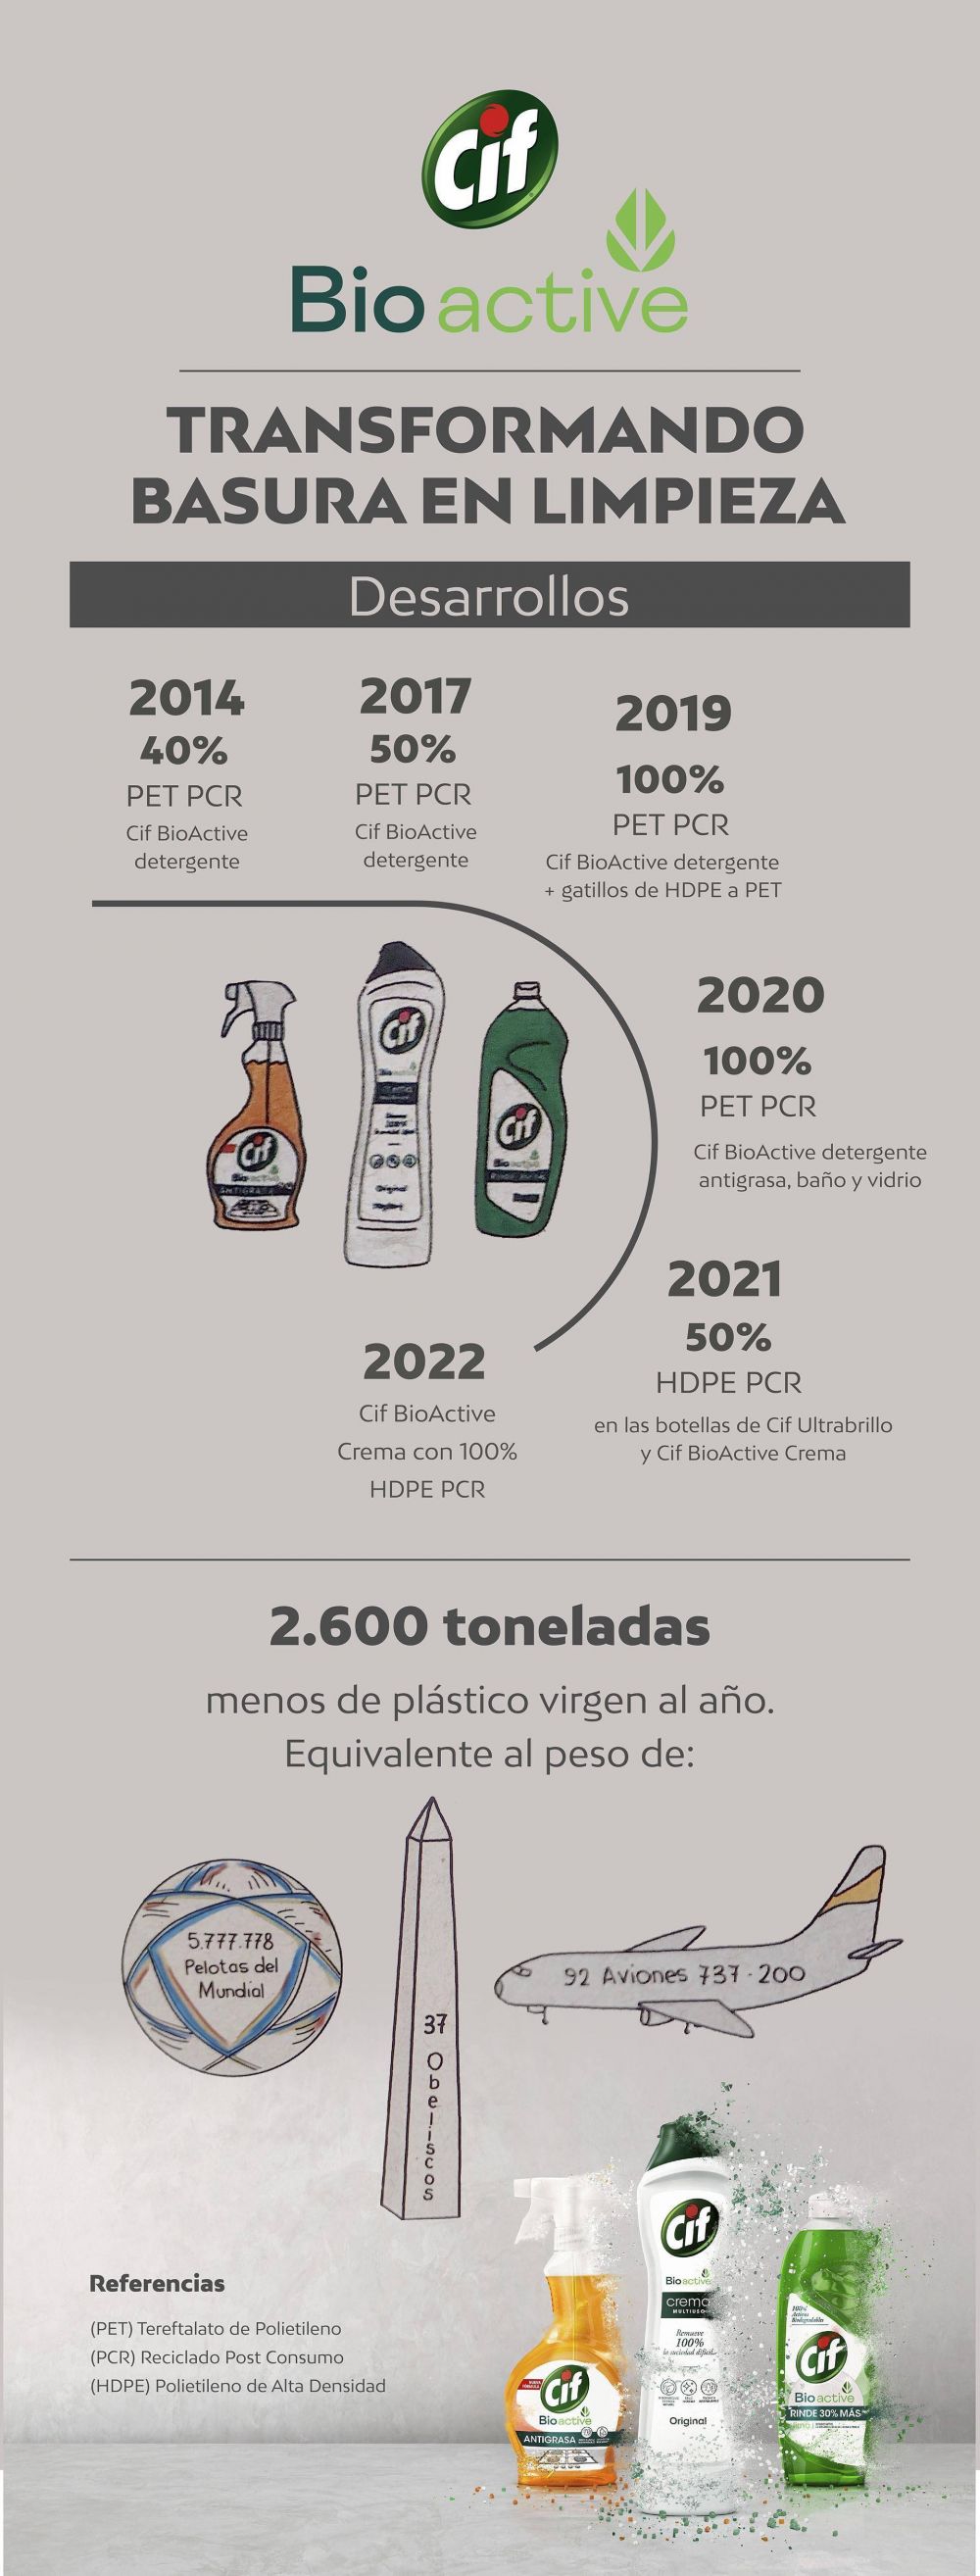 Una empresa ya ofrece productos con botellas 100% de plástico reciclable y reciclado